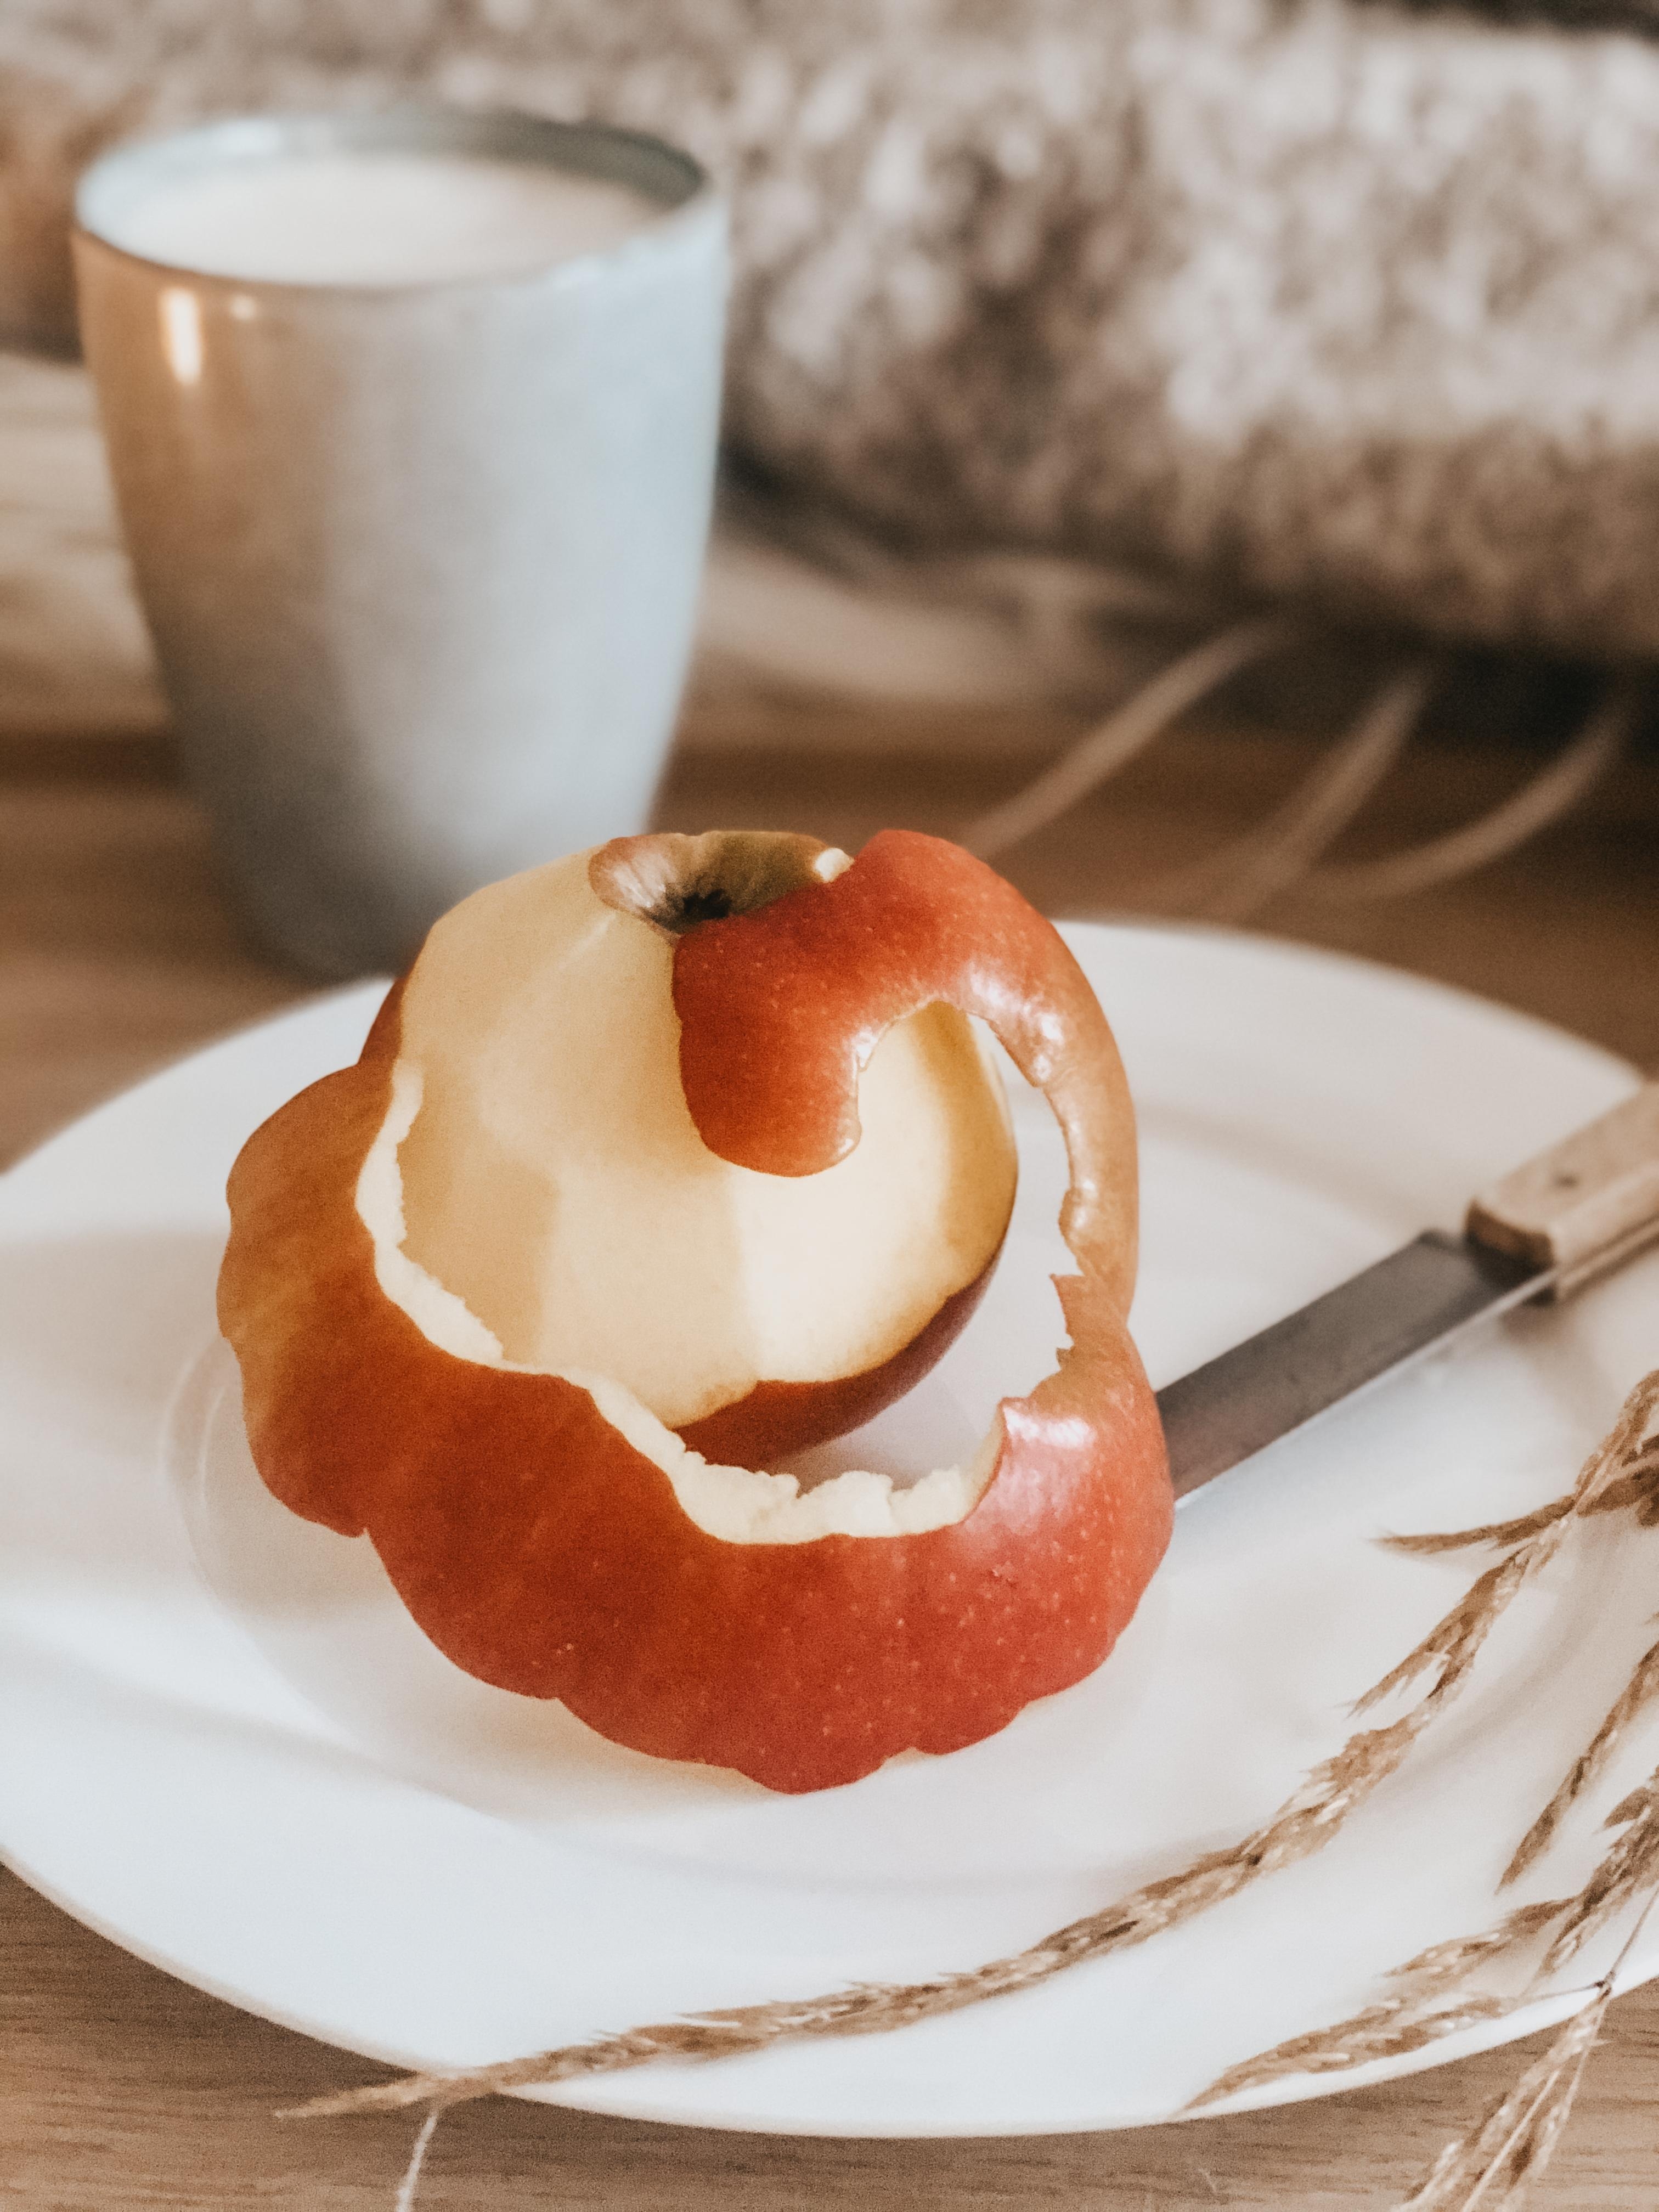 An apple a day 🍎 
#breakfast #cozy #apfel